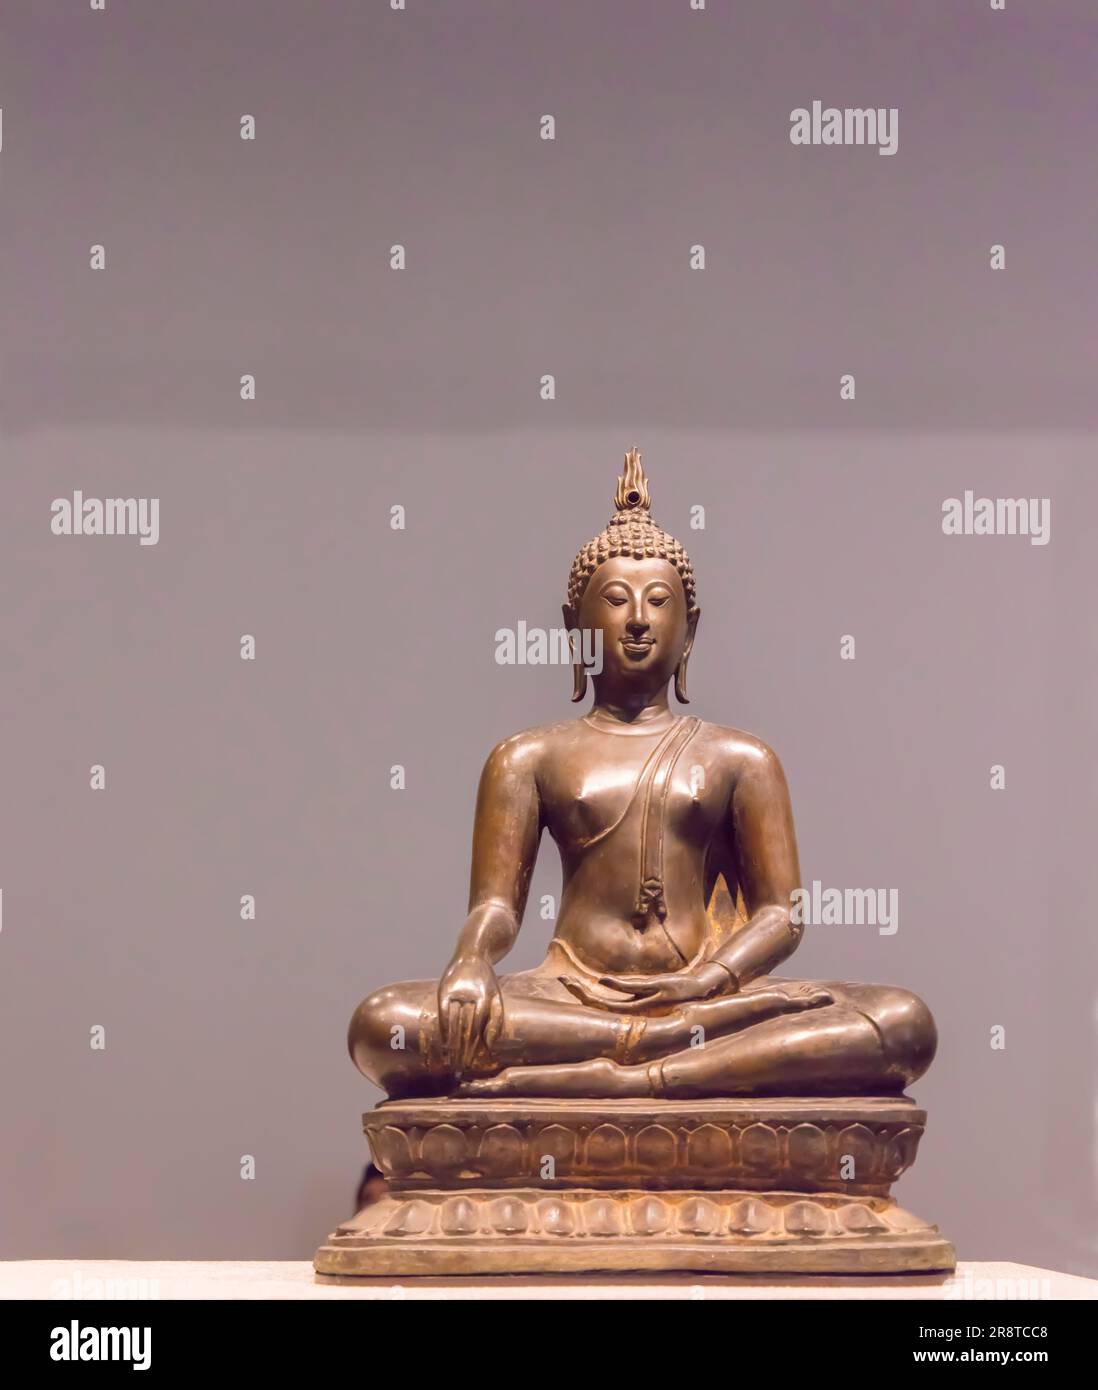 Statua di Buddah Maraviyaha dalla Thailandia 1400 - 1500 d.C. nel Museo del Louvre di Abu Dhabi, Emirati Arabi Uniti con spazio per le copie Foto Stock